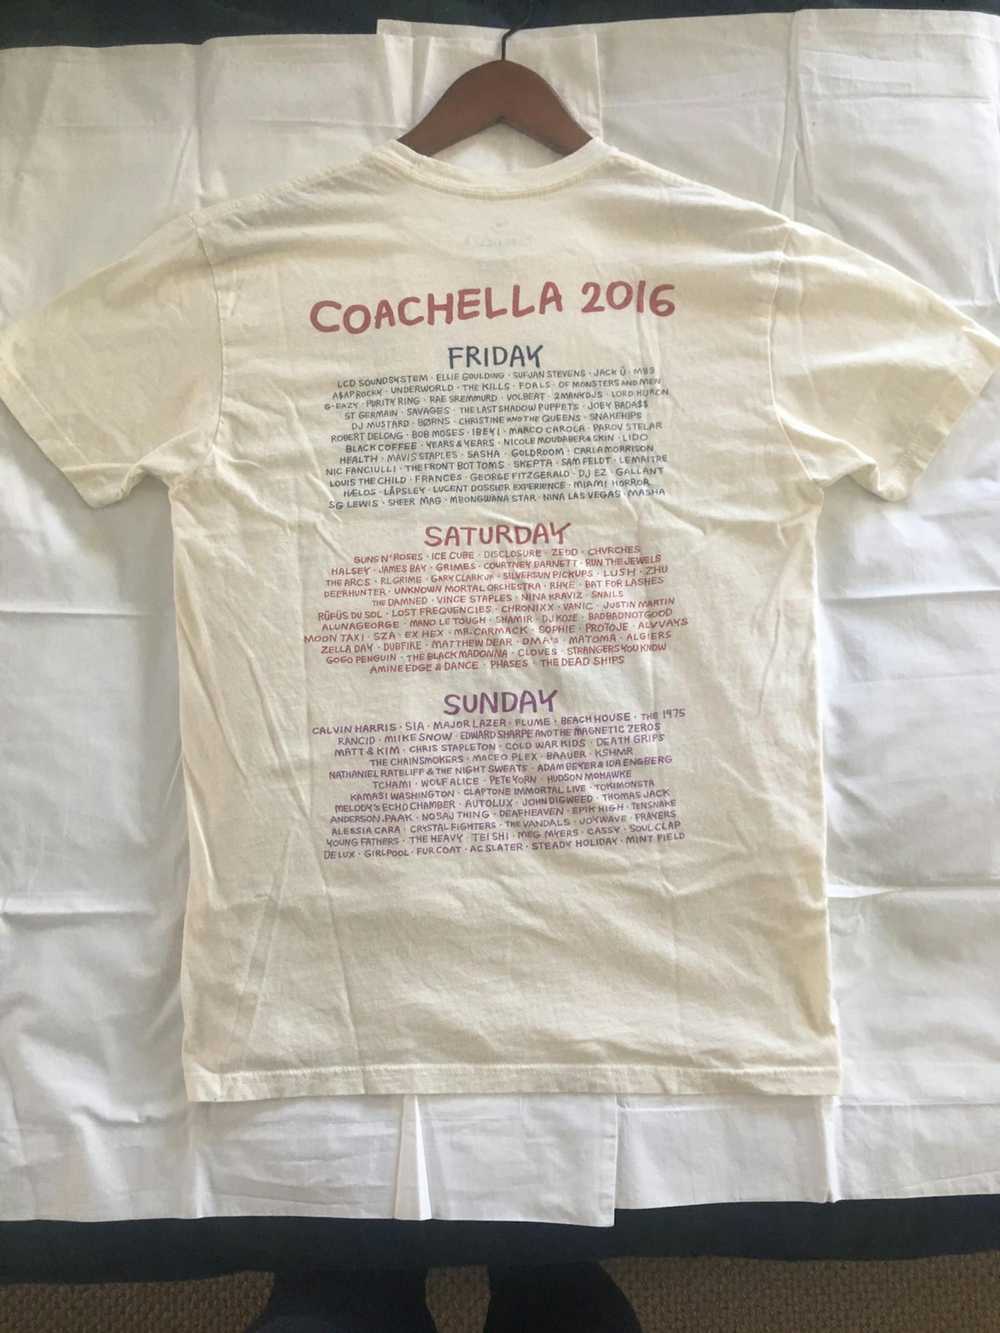 Coachella Coachella 2016 T-shirt Medium - image 2